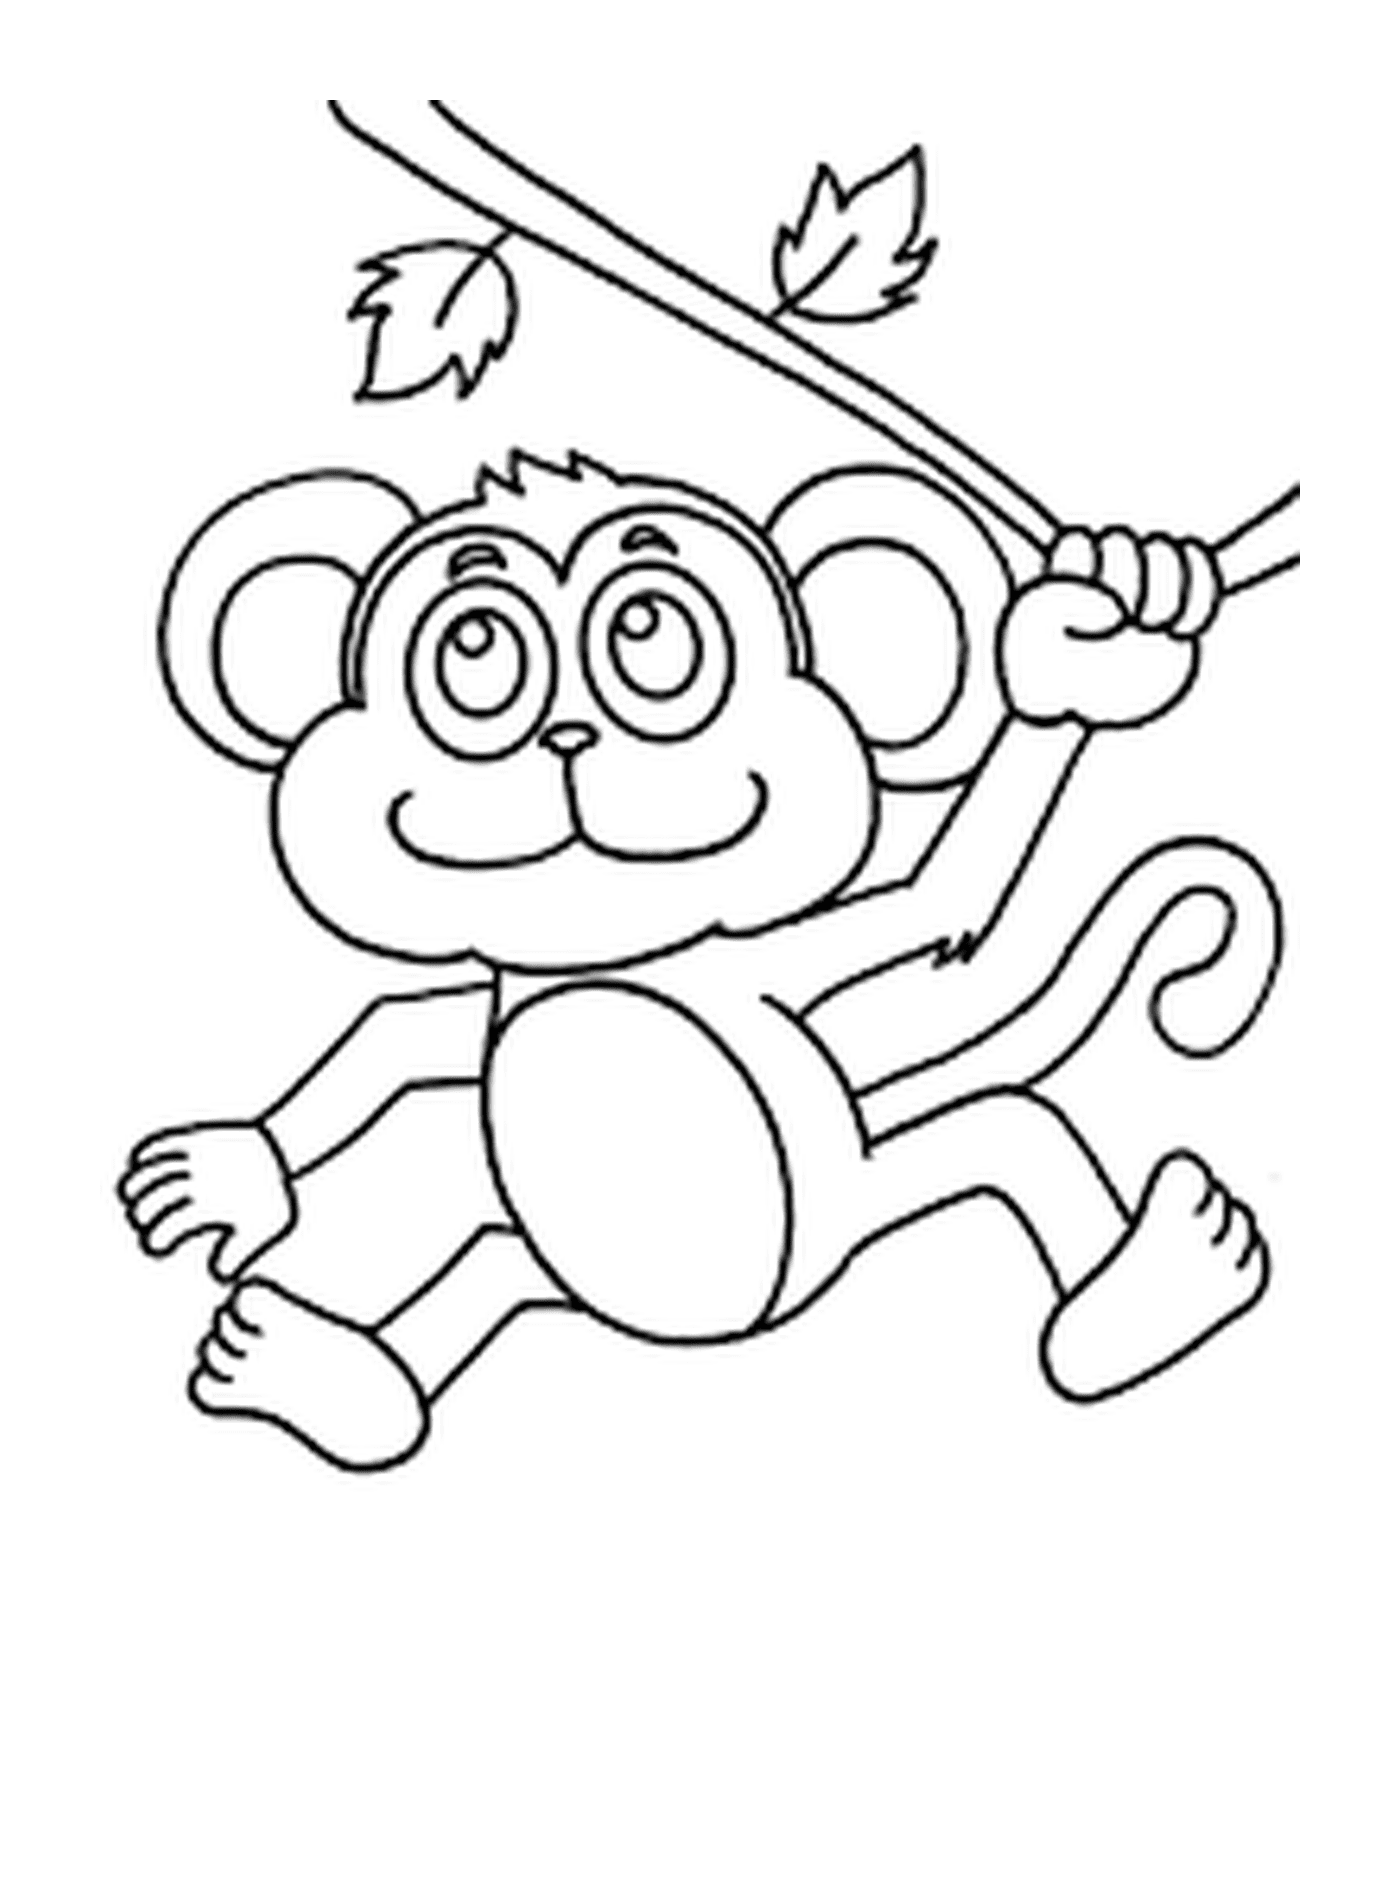  Little monkey swinging 